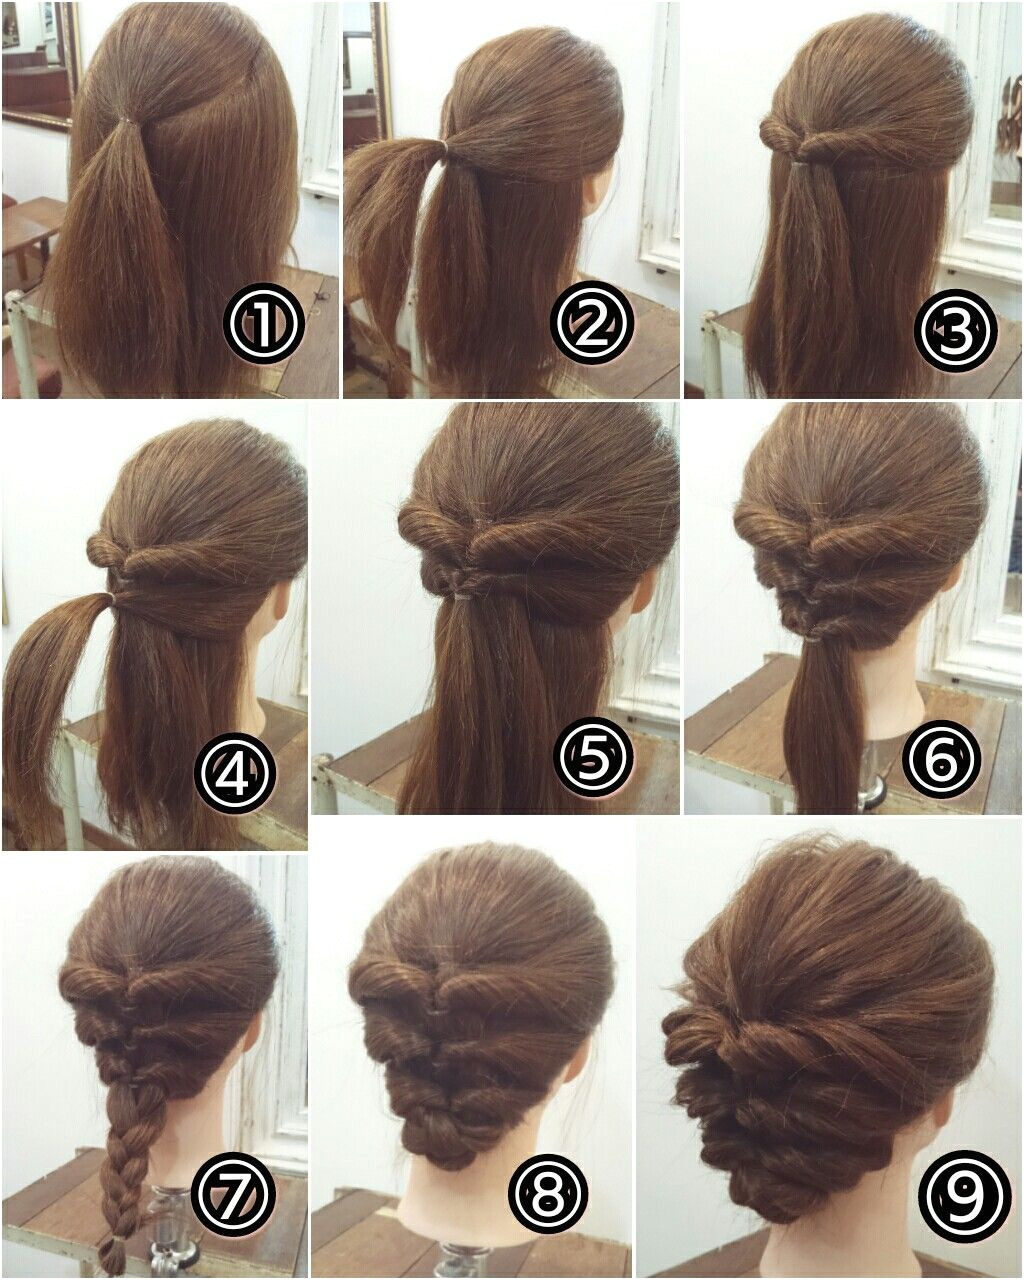 Step by step hair updo finish braid